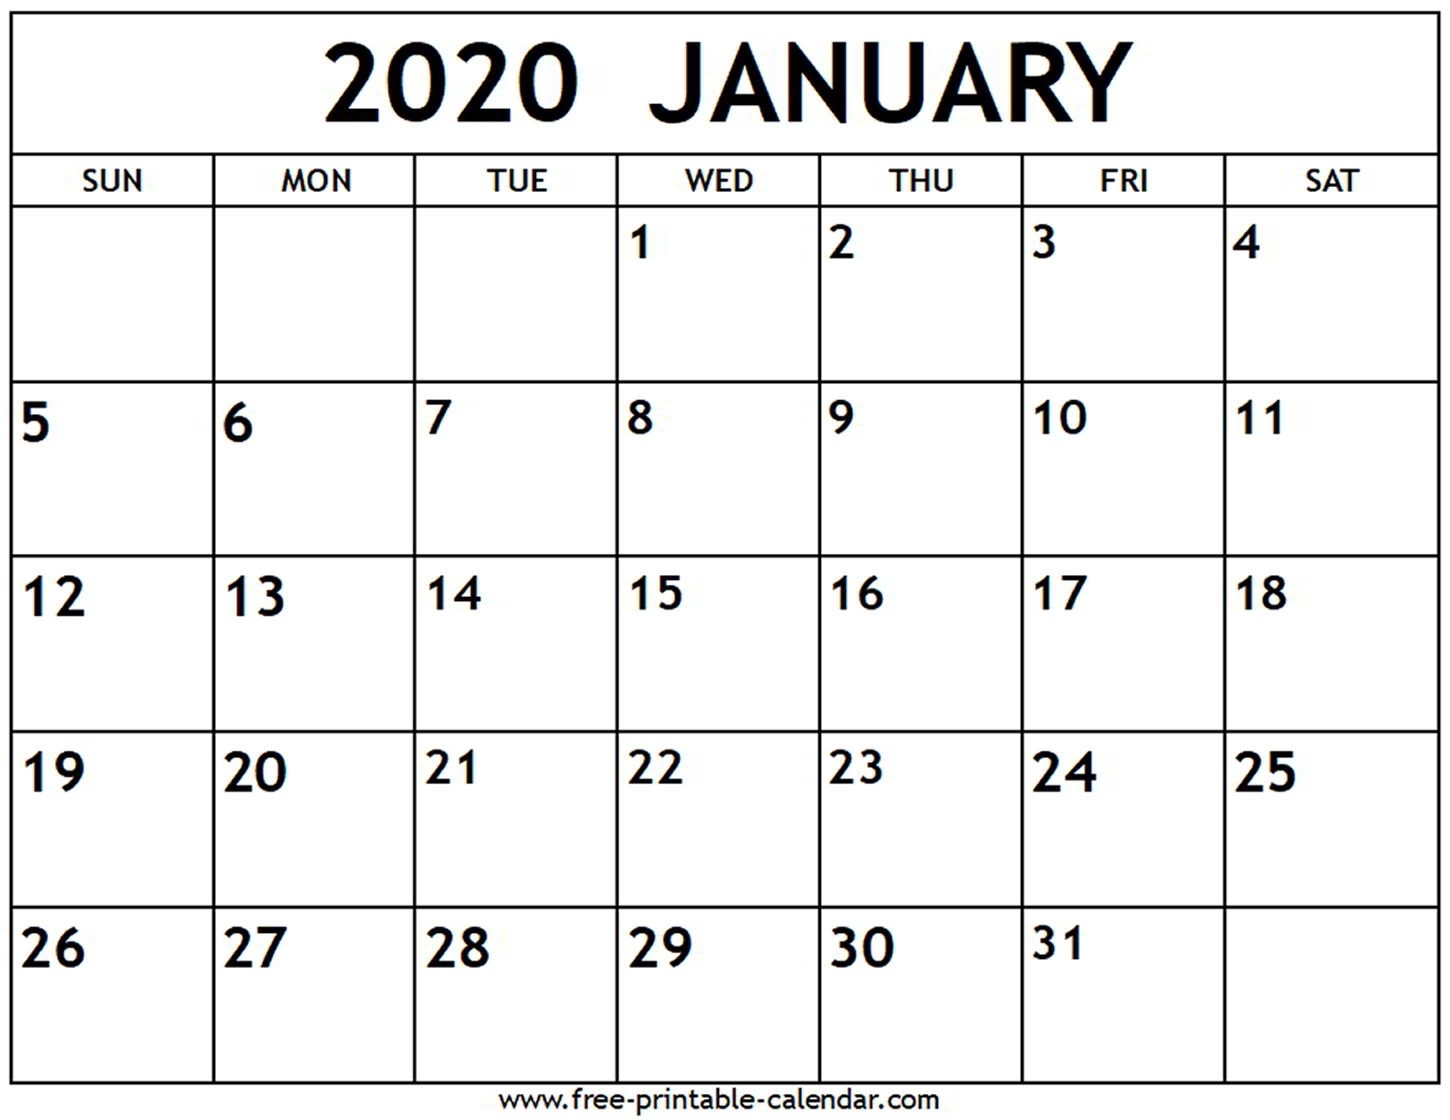 January 2020 Calendar - Free-Printable-Calendar-Editable January 2020 Calendar